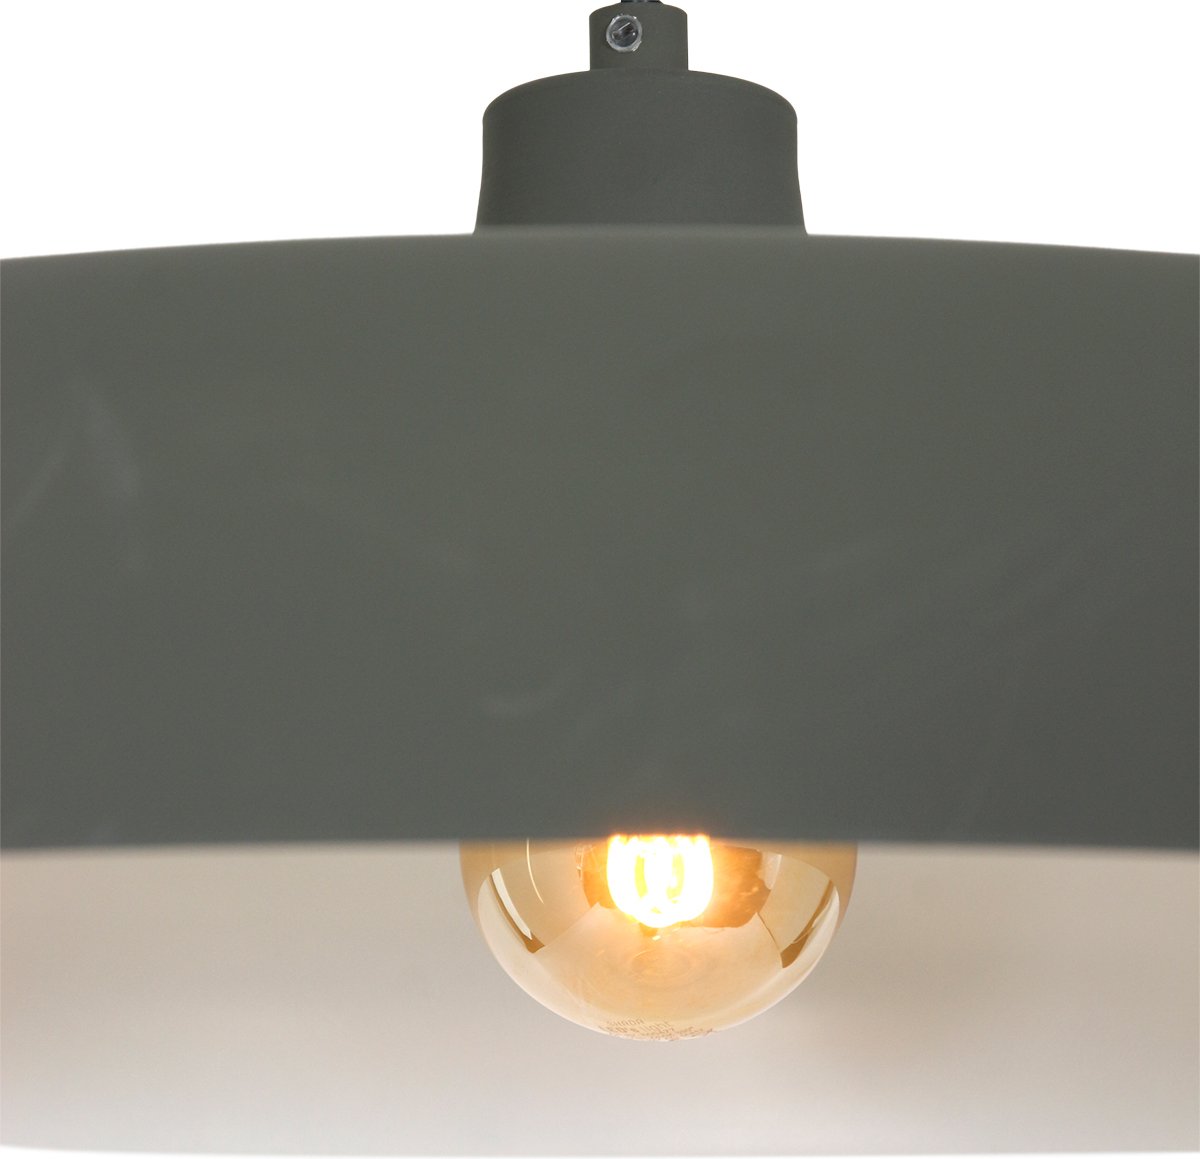 Hanglamp - Bussandri Limited - Design - Metaal - Design - E27 - L: 55cm - Voor Binnen - Woonkamer - Eetkamer - Groen